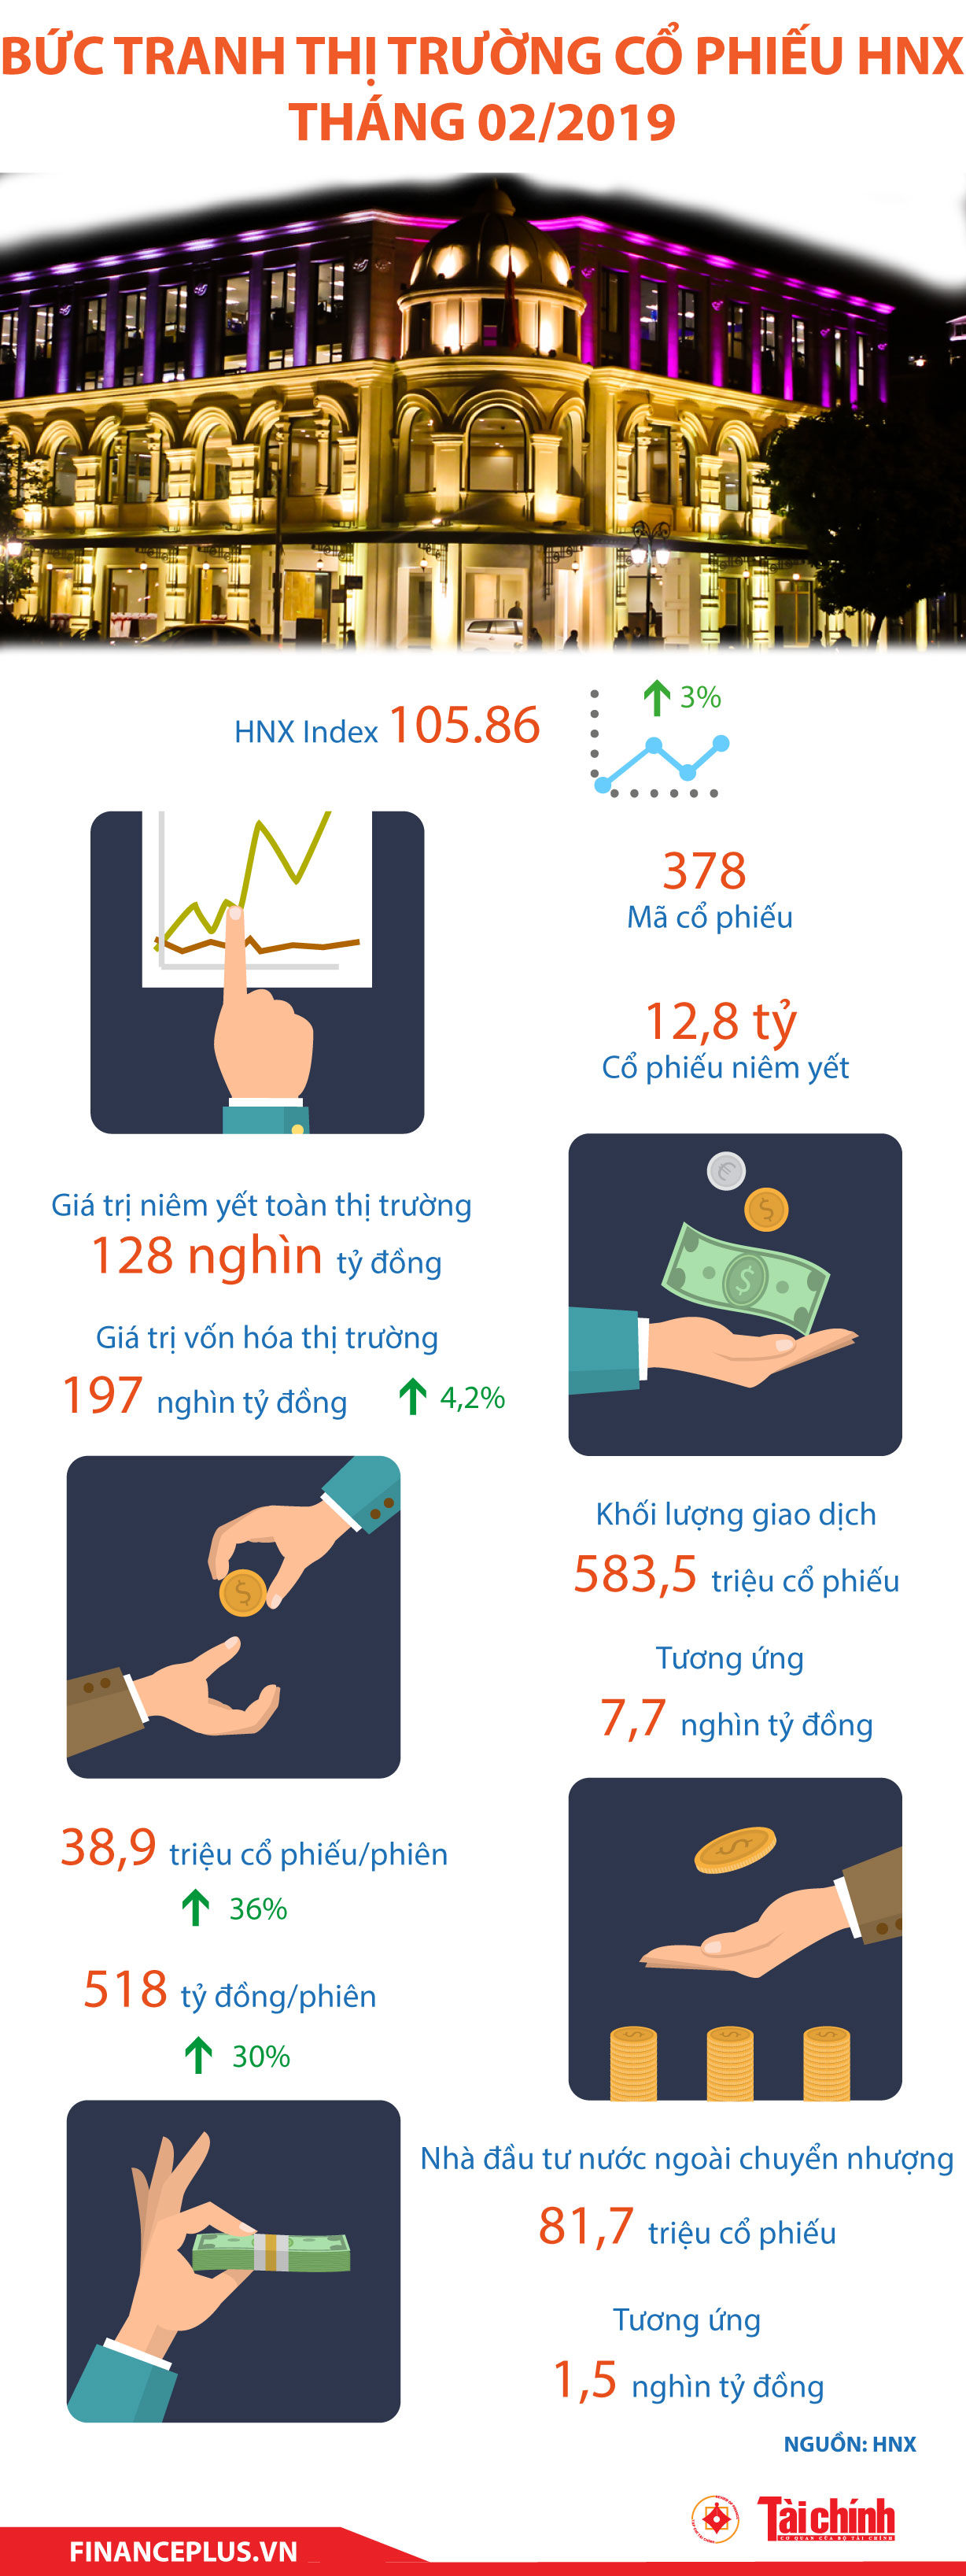 [Infographic] Bức tranh thị trường cổ phiếu HNX tháng 02/2019 - Ảnh 1